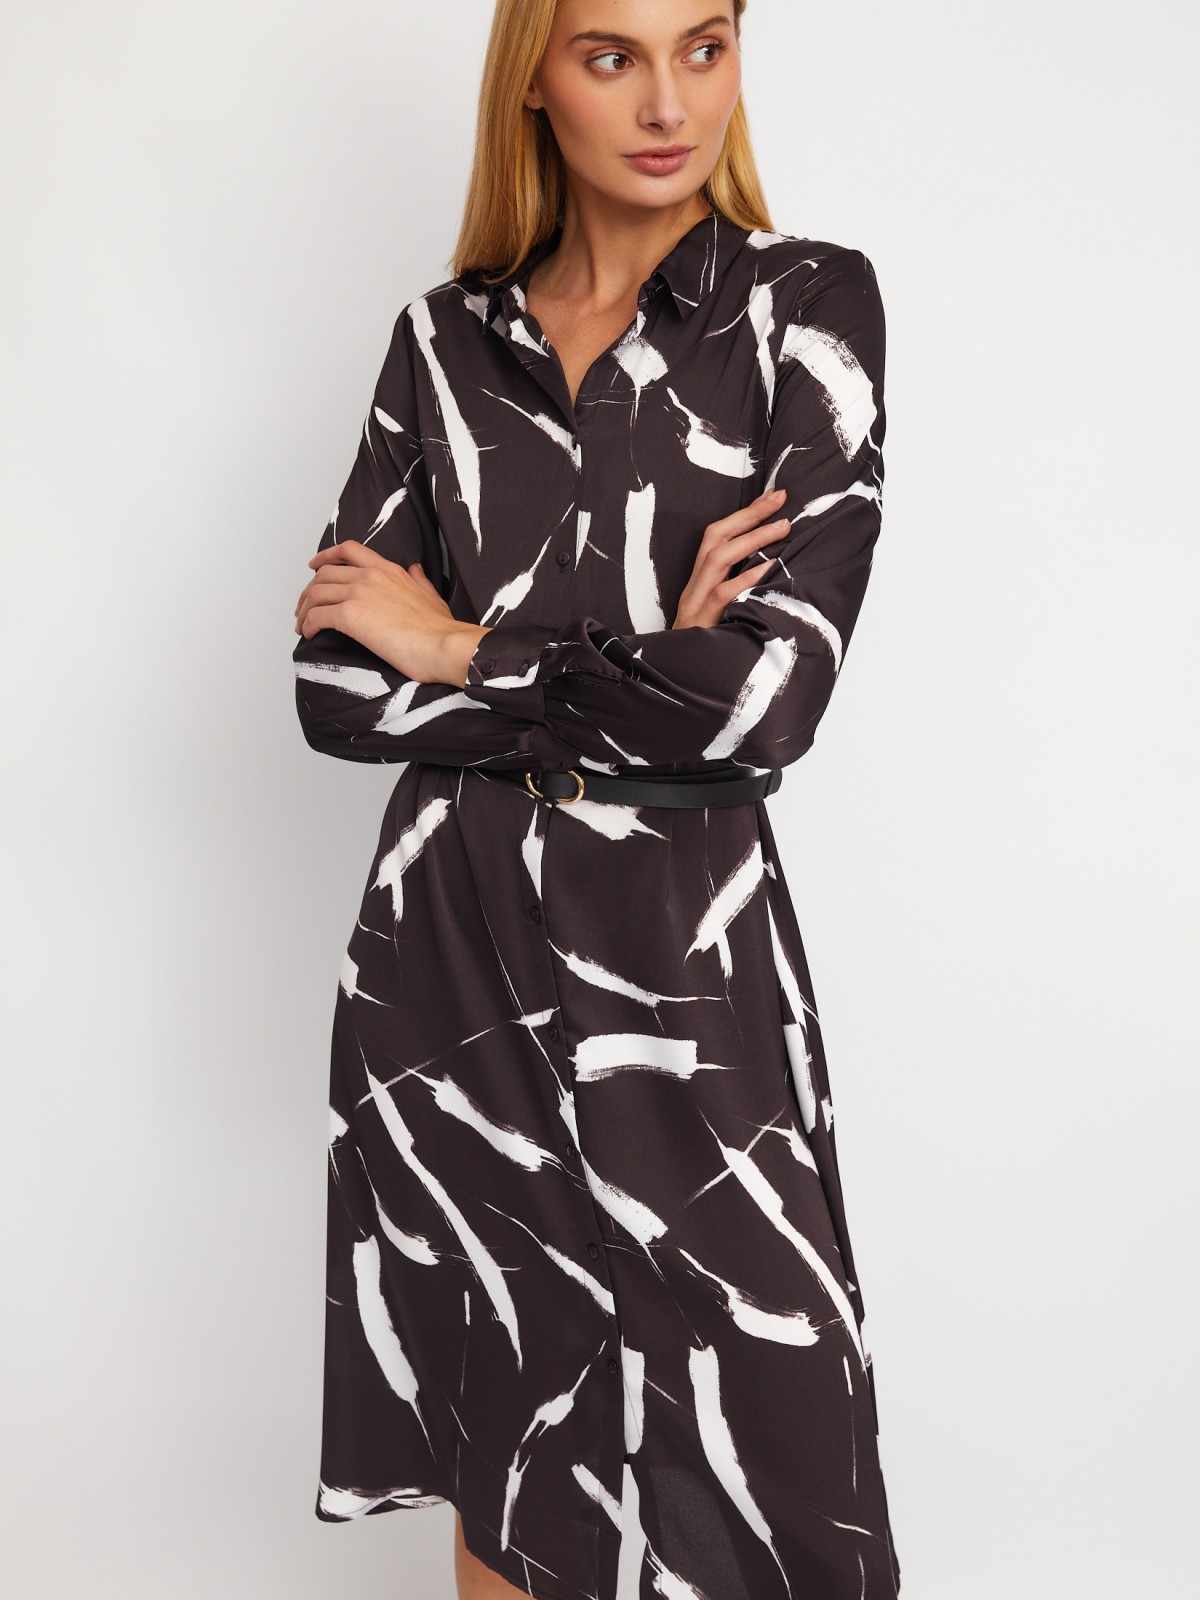 Атласное платье-рубашка с воротником и акцентном на талии zolla 02411827Y353, цвет коричневый, размер XS - фото 3